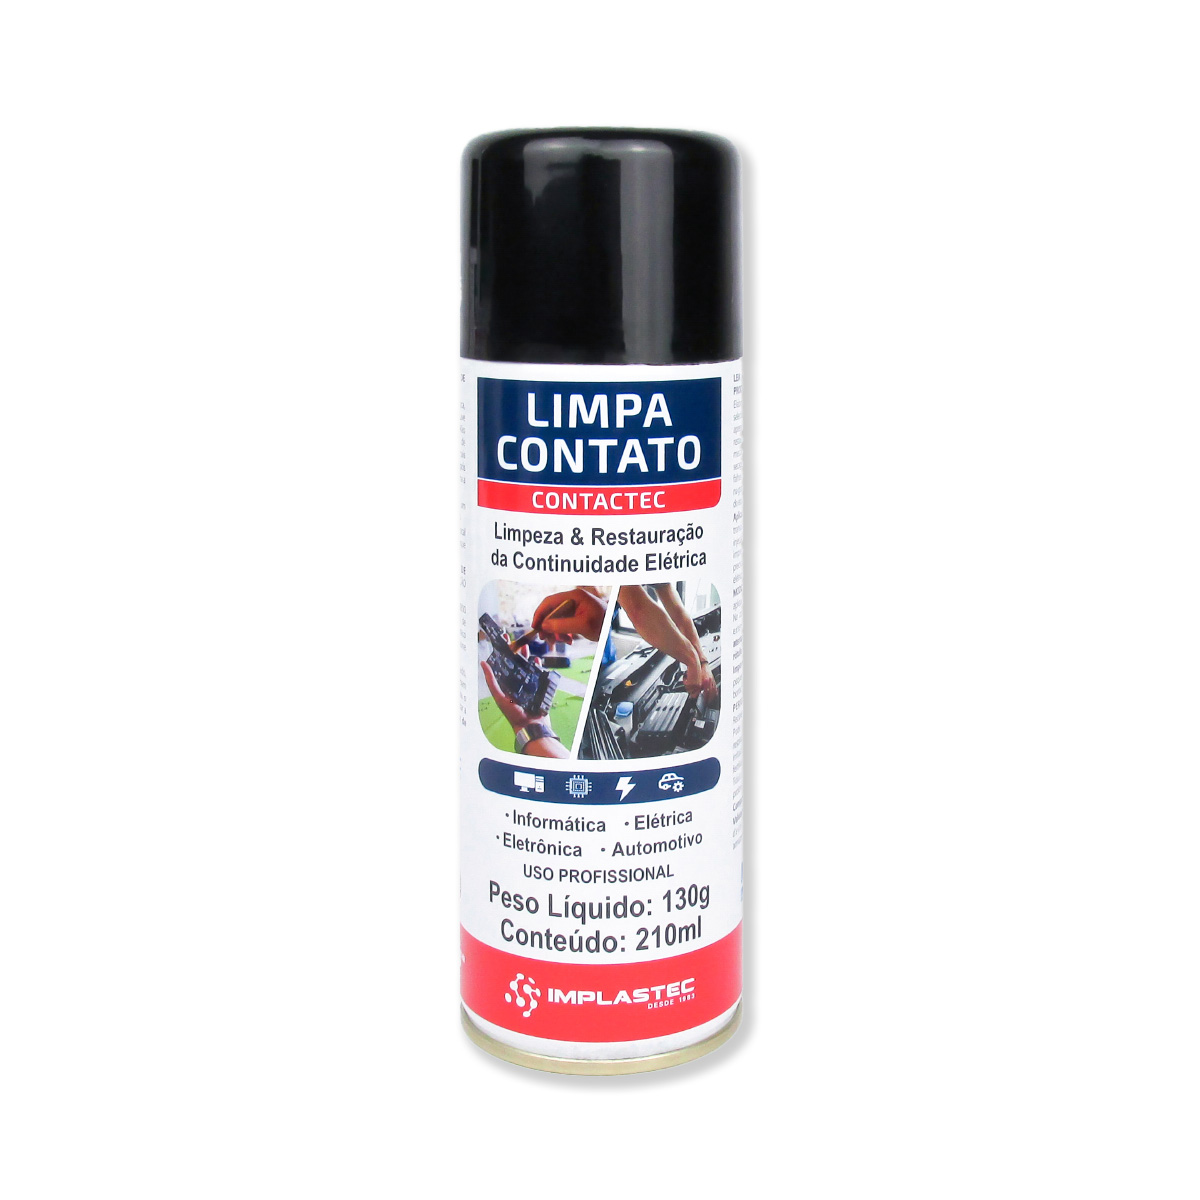 Spray Limpa Contato Contactec Implastec - 130g / 210ml